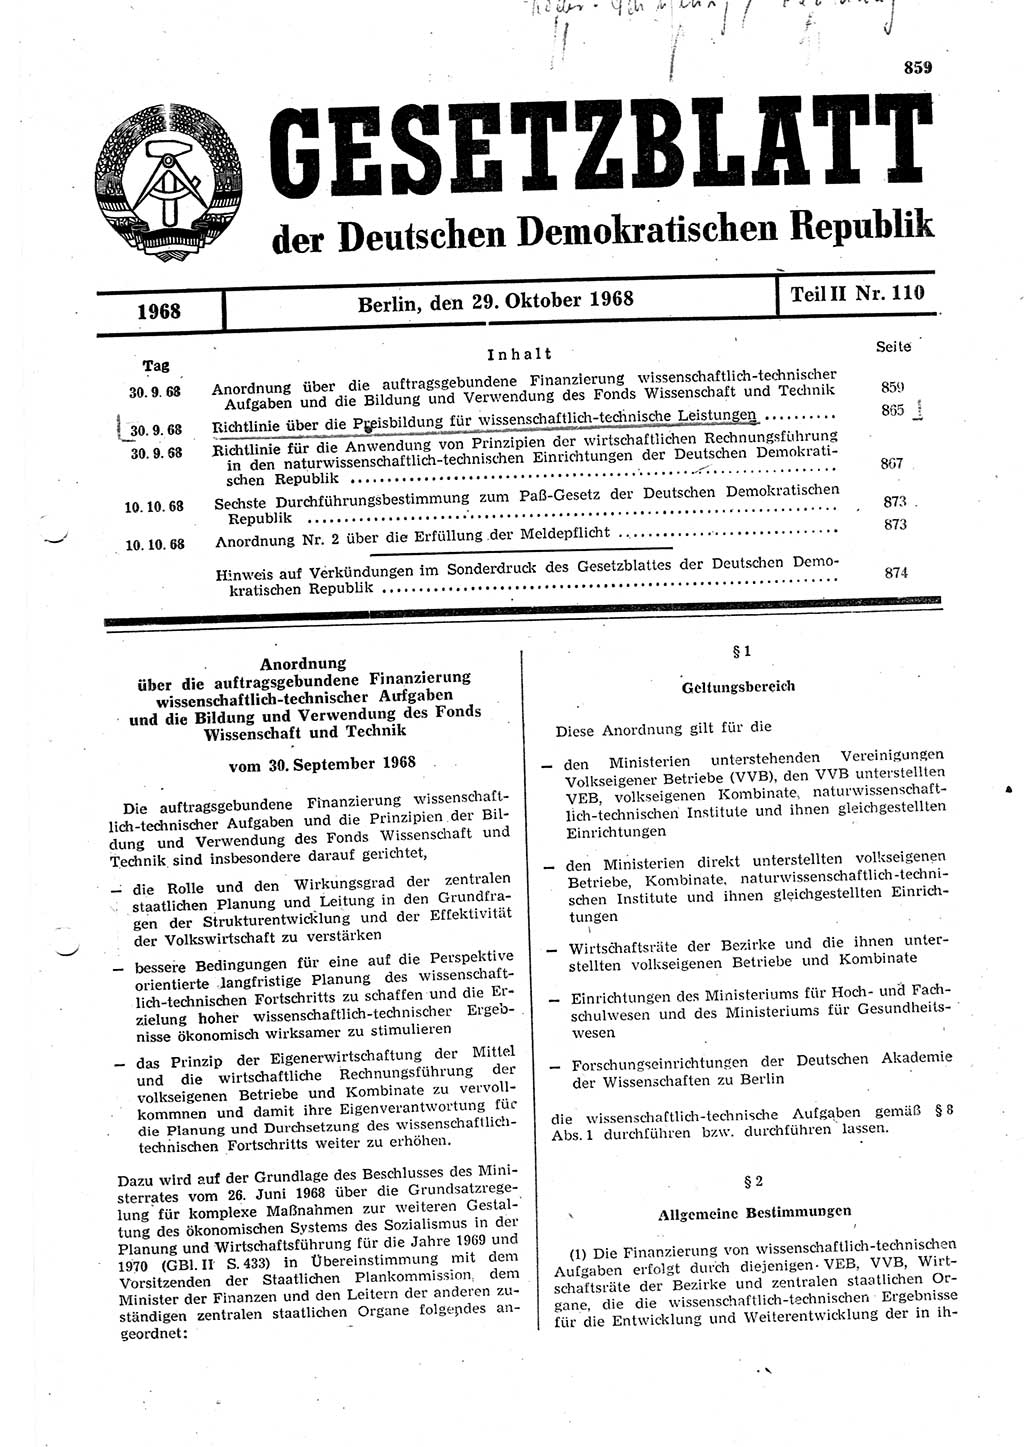 Gesetzblatt (GBl.) der Deutschen Demokratischen Republik (DDR) Teil ⅠⅠ 1968, Seite 859 (GBl. DDR ⅠⅠ 1968, S. 859)